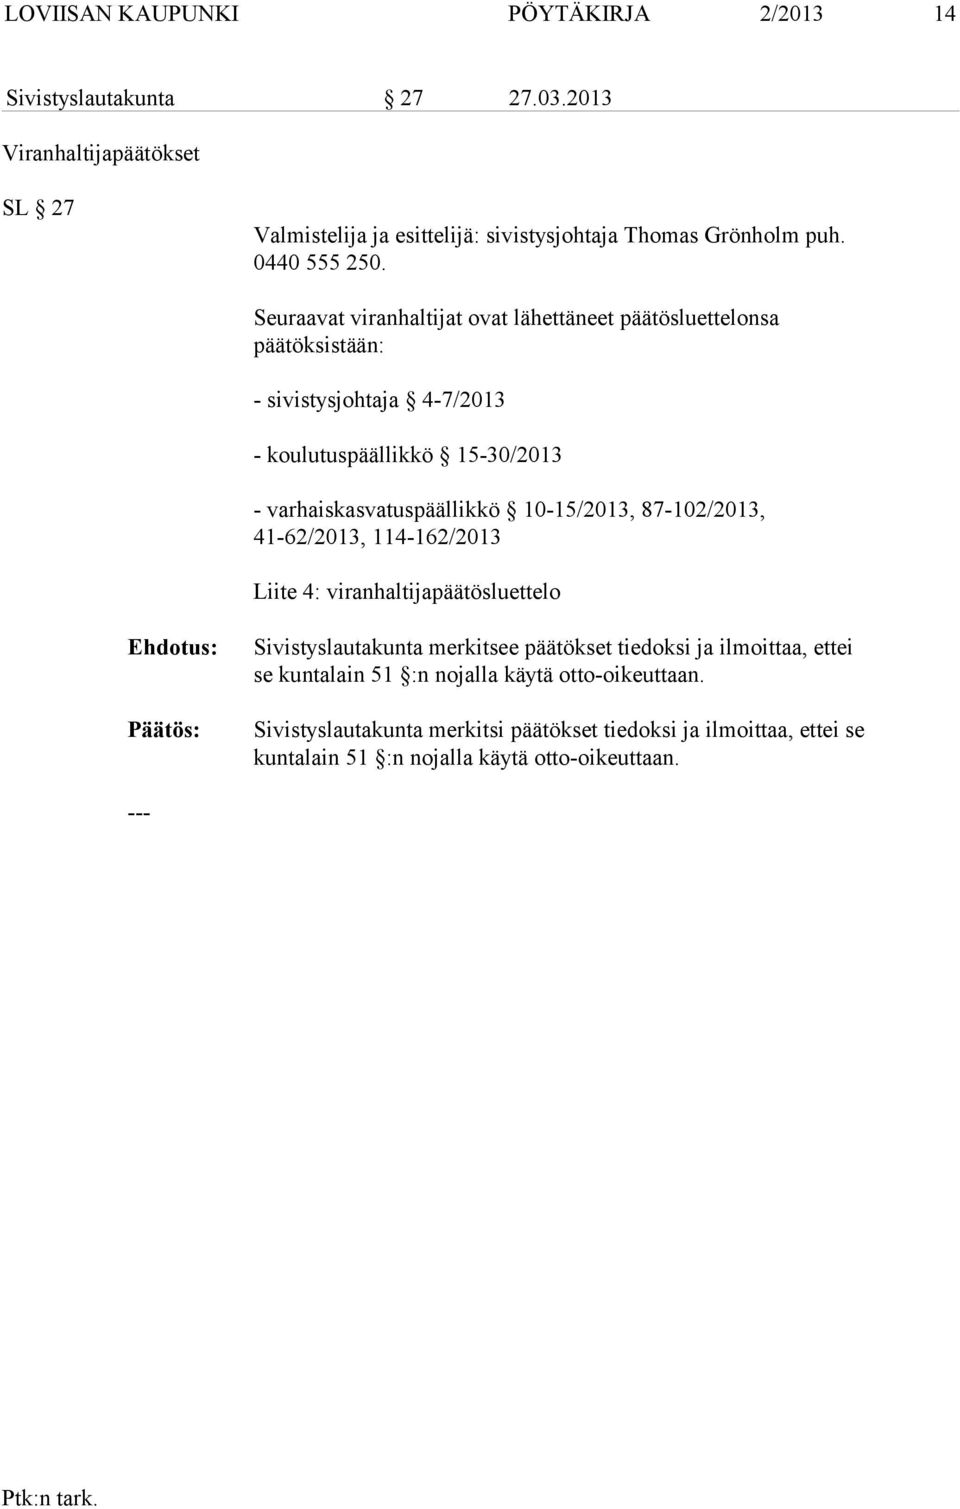 Seuraavat viranhaltijat ovat lähettäneet päätösluettelonsa päätöksistään: - sivistysjohtaja 4-7/2013 - koulutuspäällikkö 15-30/2013 - varhaiskasvatuspäällikkö